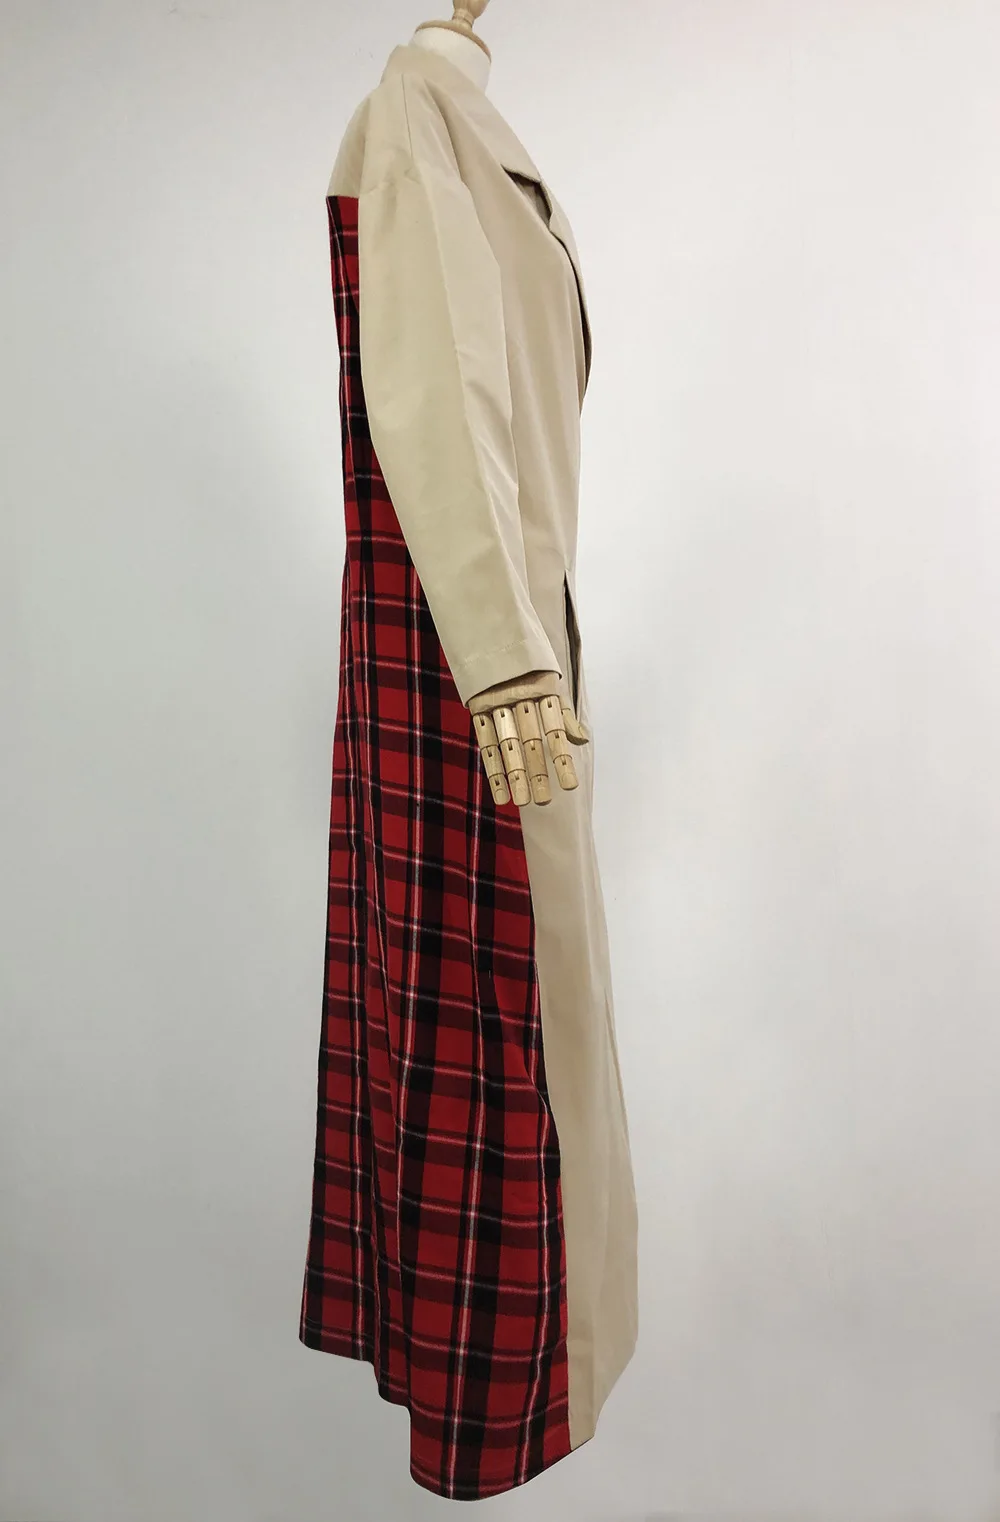 BOOFEENAA Красный Клетчатый хаки длинный тренч для женщин одежда осень зима ветровка куртки в уличном стиле пальто C28-BA05